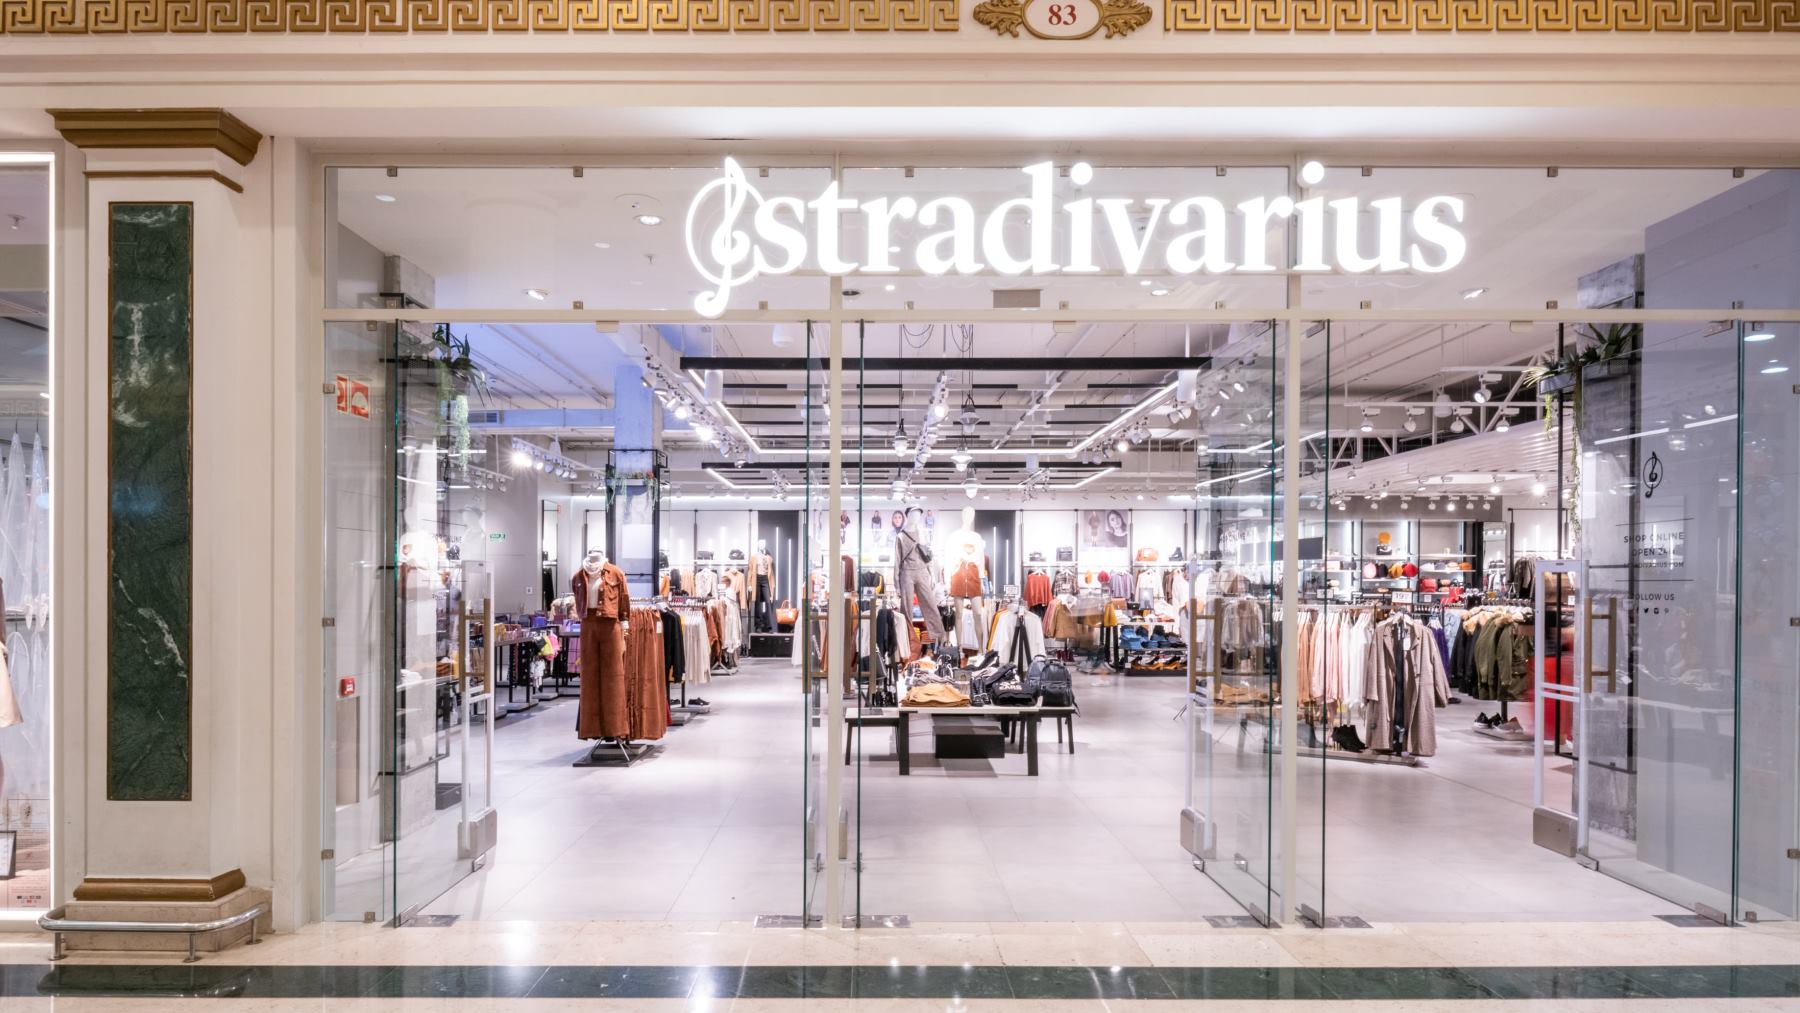 Te encantará ser organizada con la agenda de Stradivarius más original